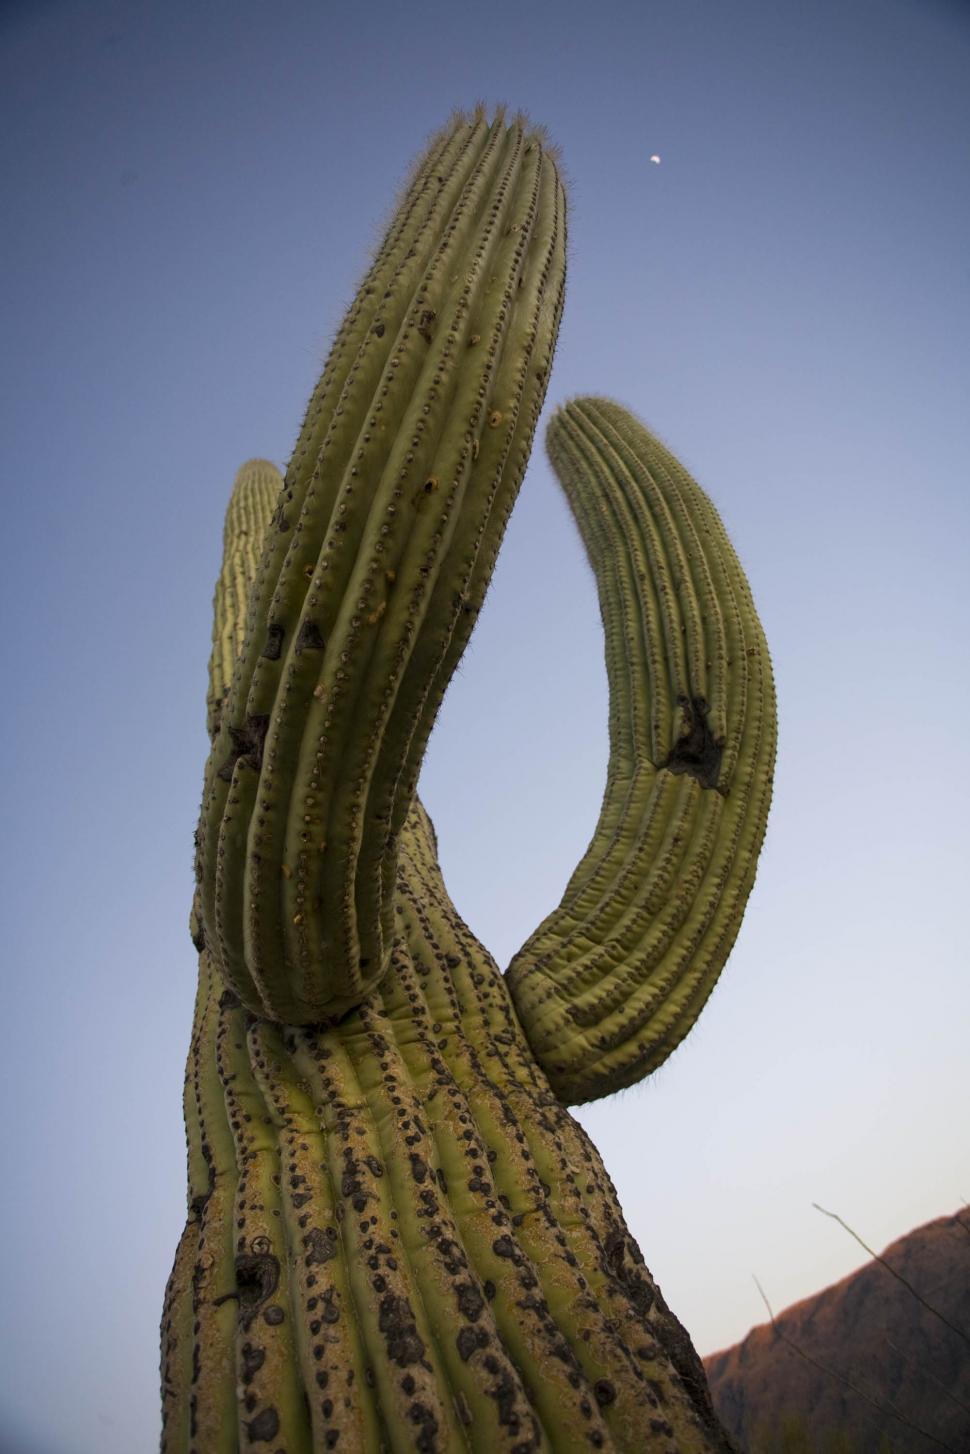 saguaro cactus illustration